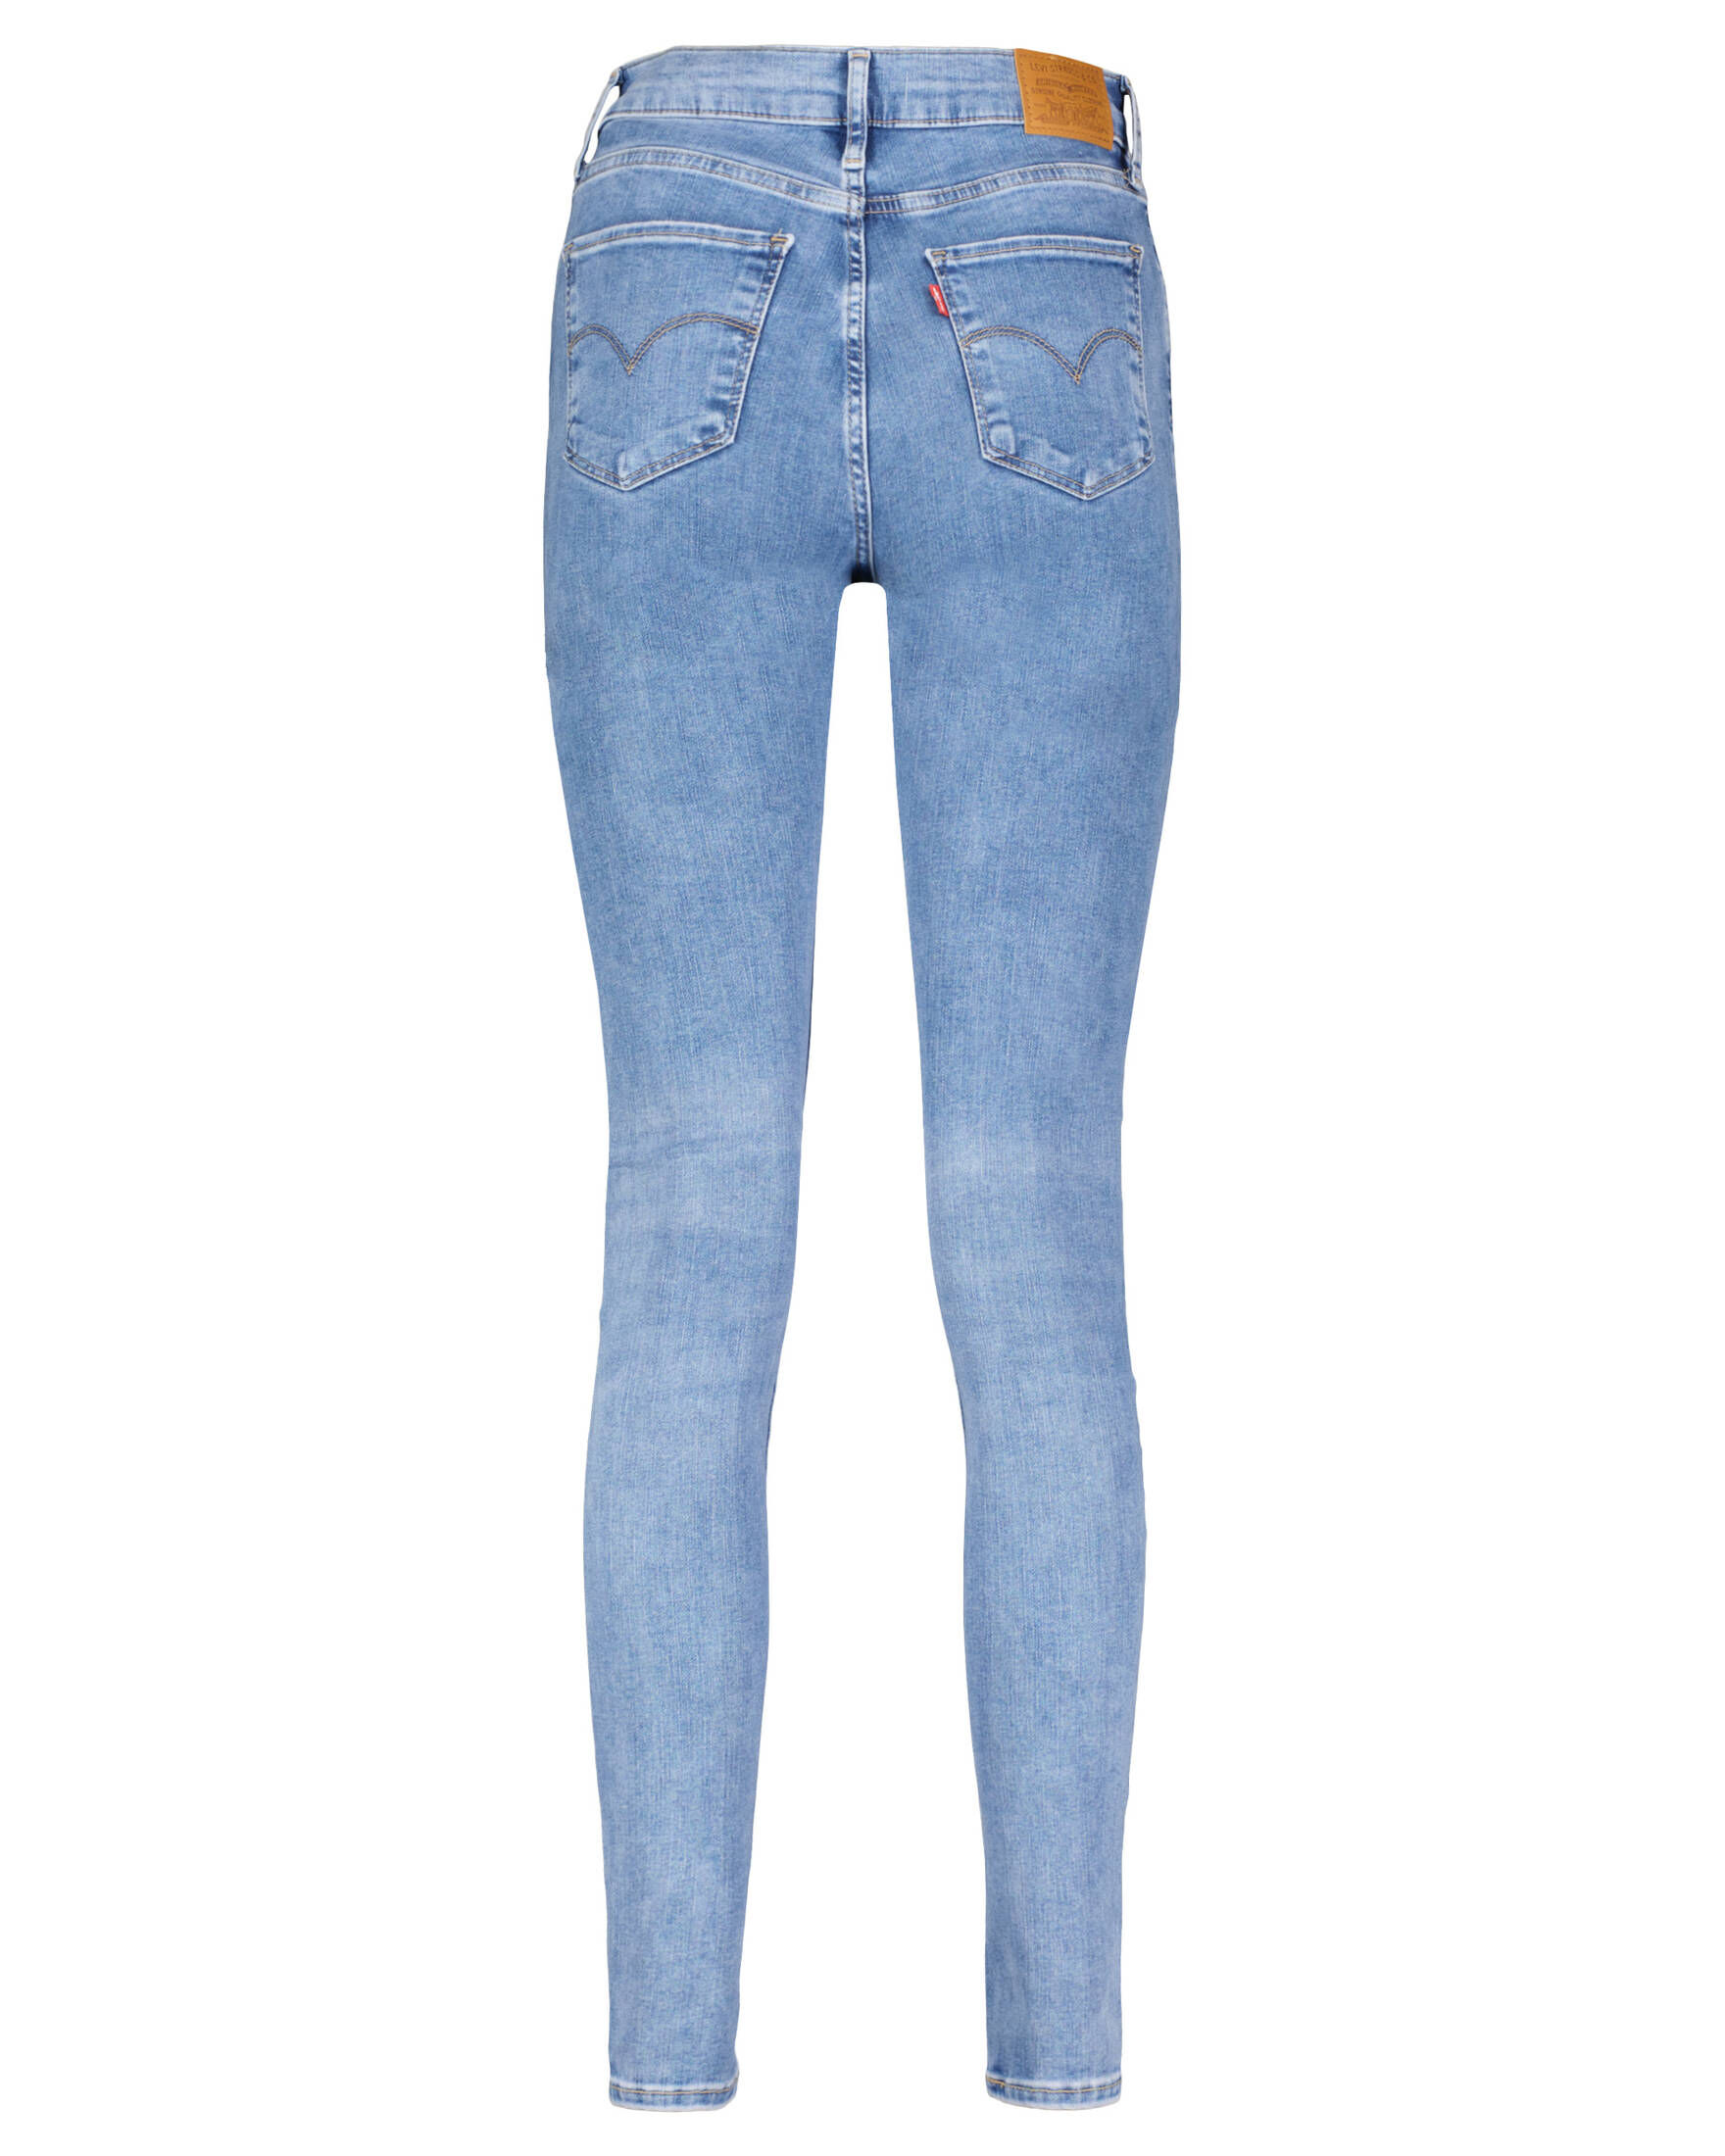 Damen Jeans 720 Super Skinny Fit High Rise